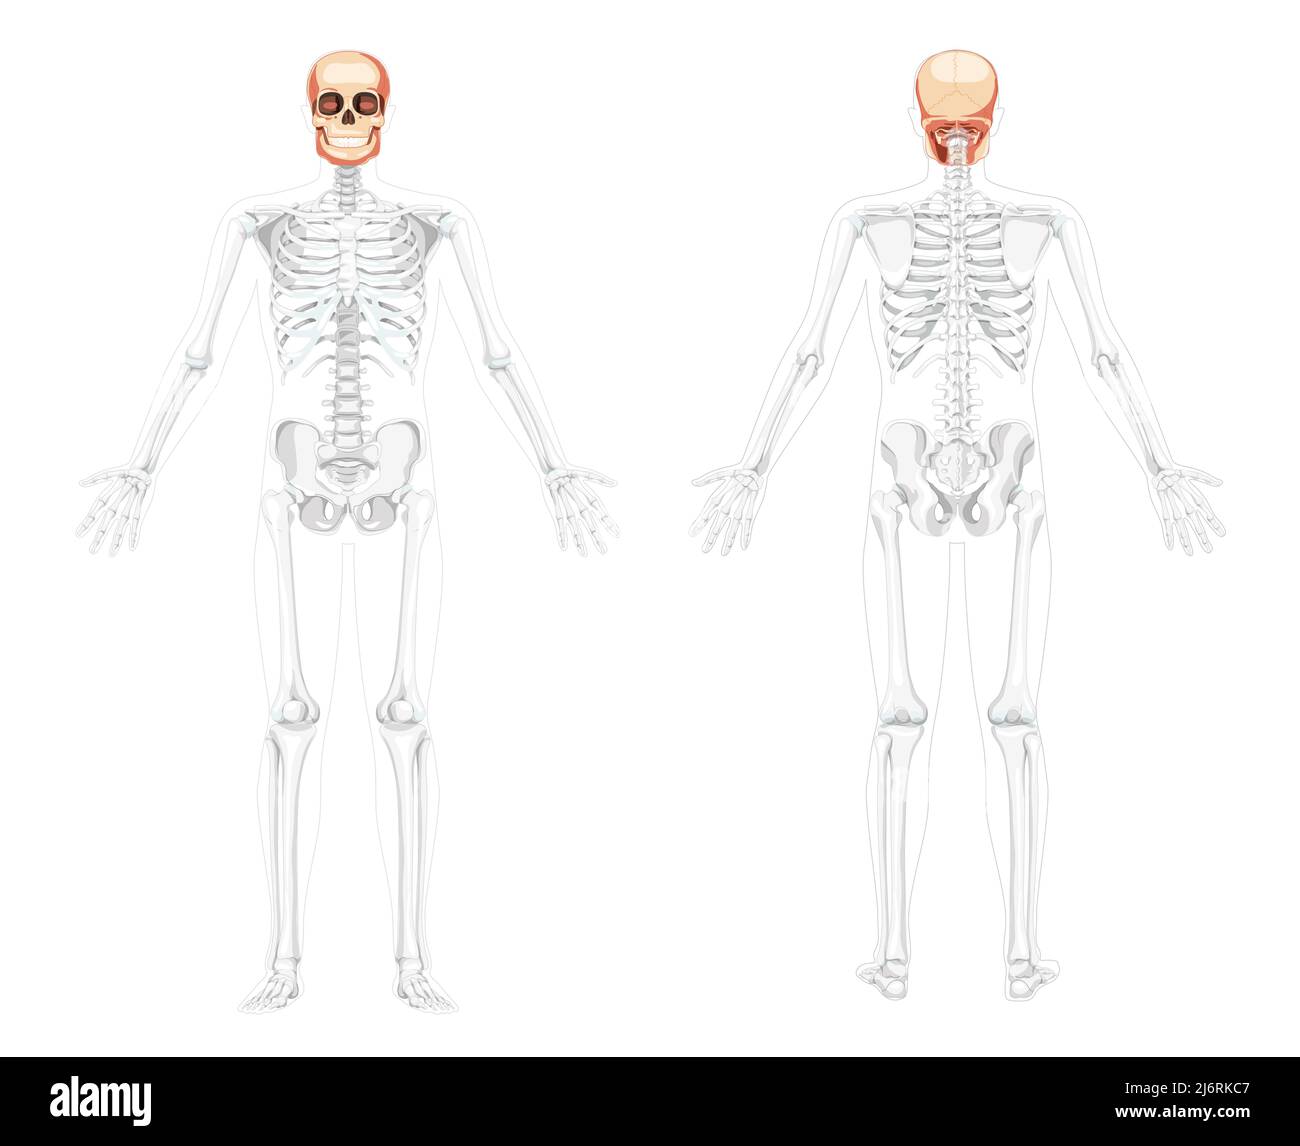 Ensemble de crâne tête humaine Skeleton vue avant arrière avec mains ouvertes partiellement transparente. Modèle de mâchoires humaines avec correction anatomique réaliste réaliste couleur naturelle concept illustration vectorielle isolée Illustration de Vecteur